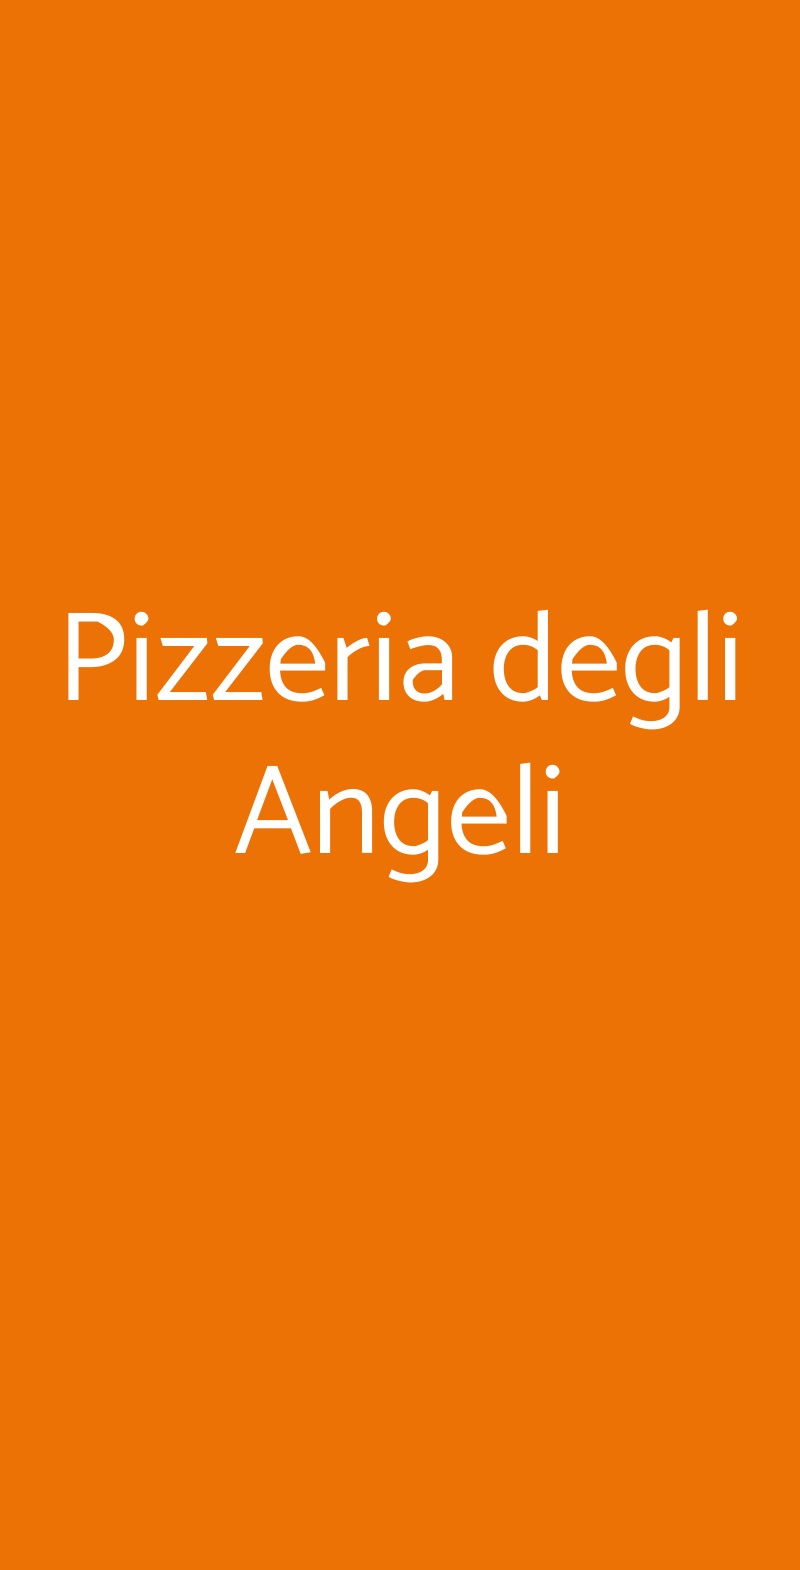 Pizzeria degli Angeli Milano menù 1 pagina